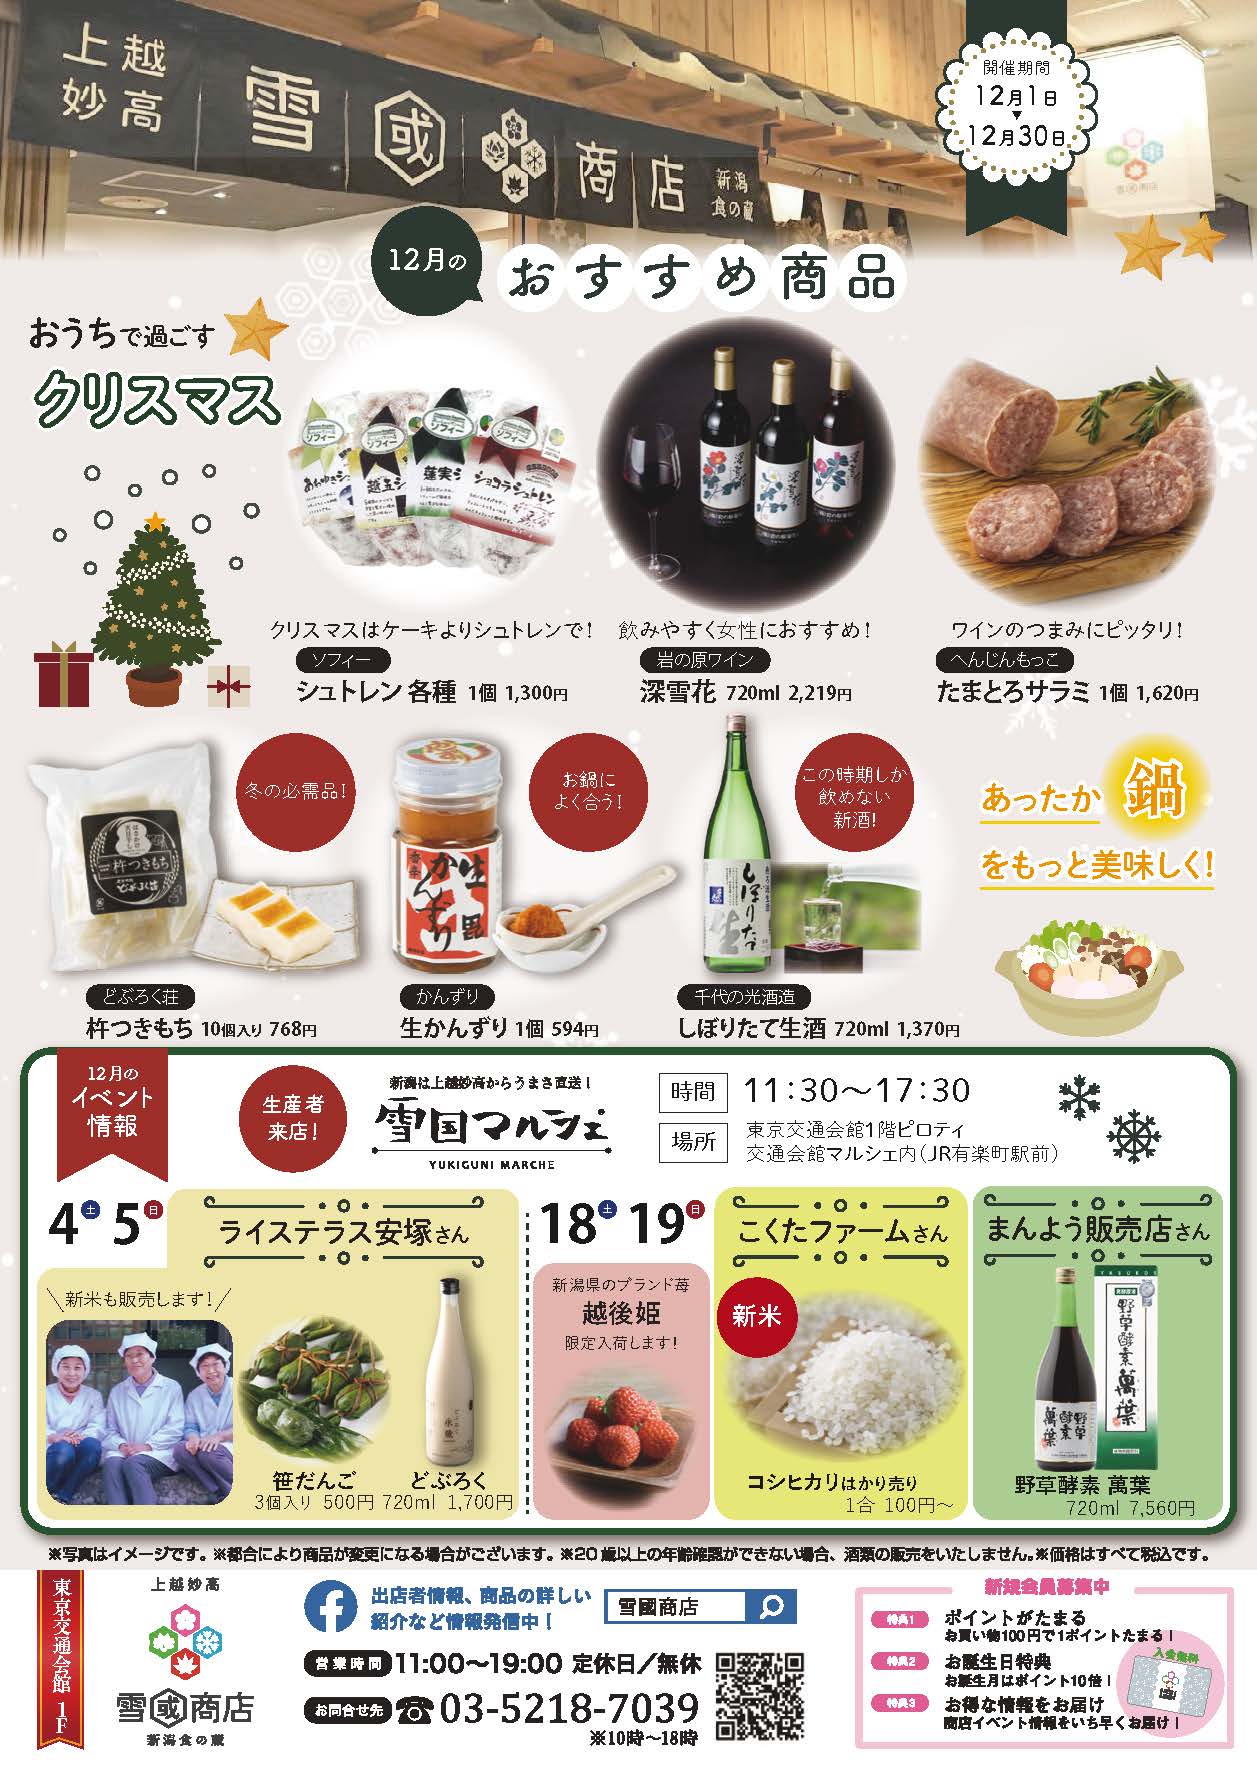 雪國商店12月イベント【クリスマス・あったか鍋フェア】 | 雪國商店